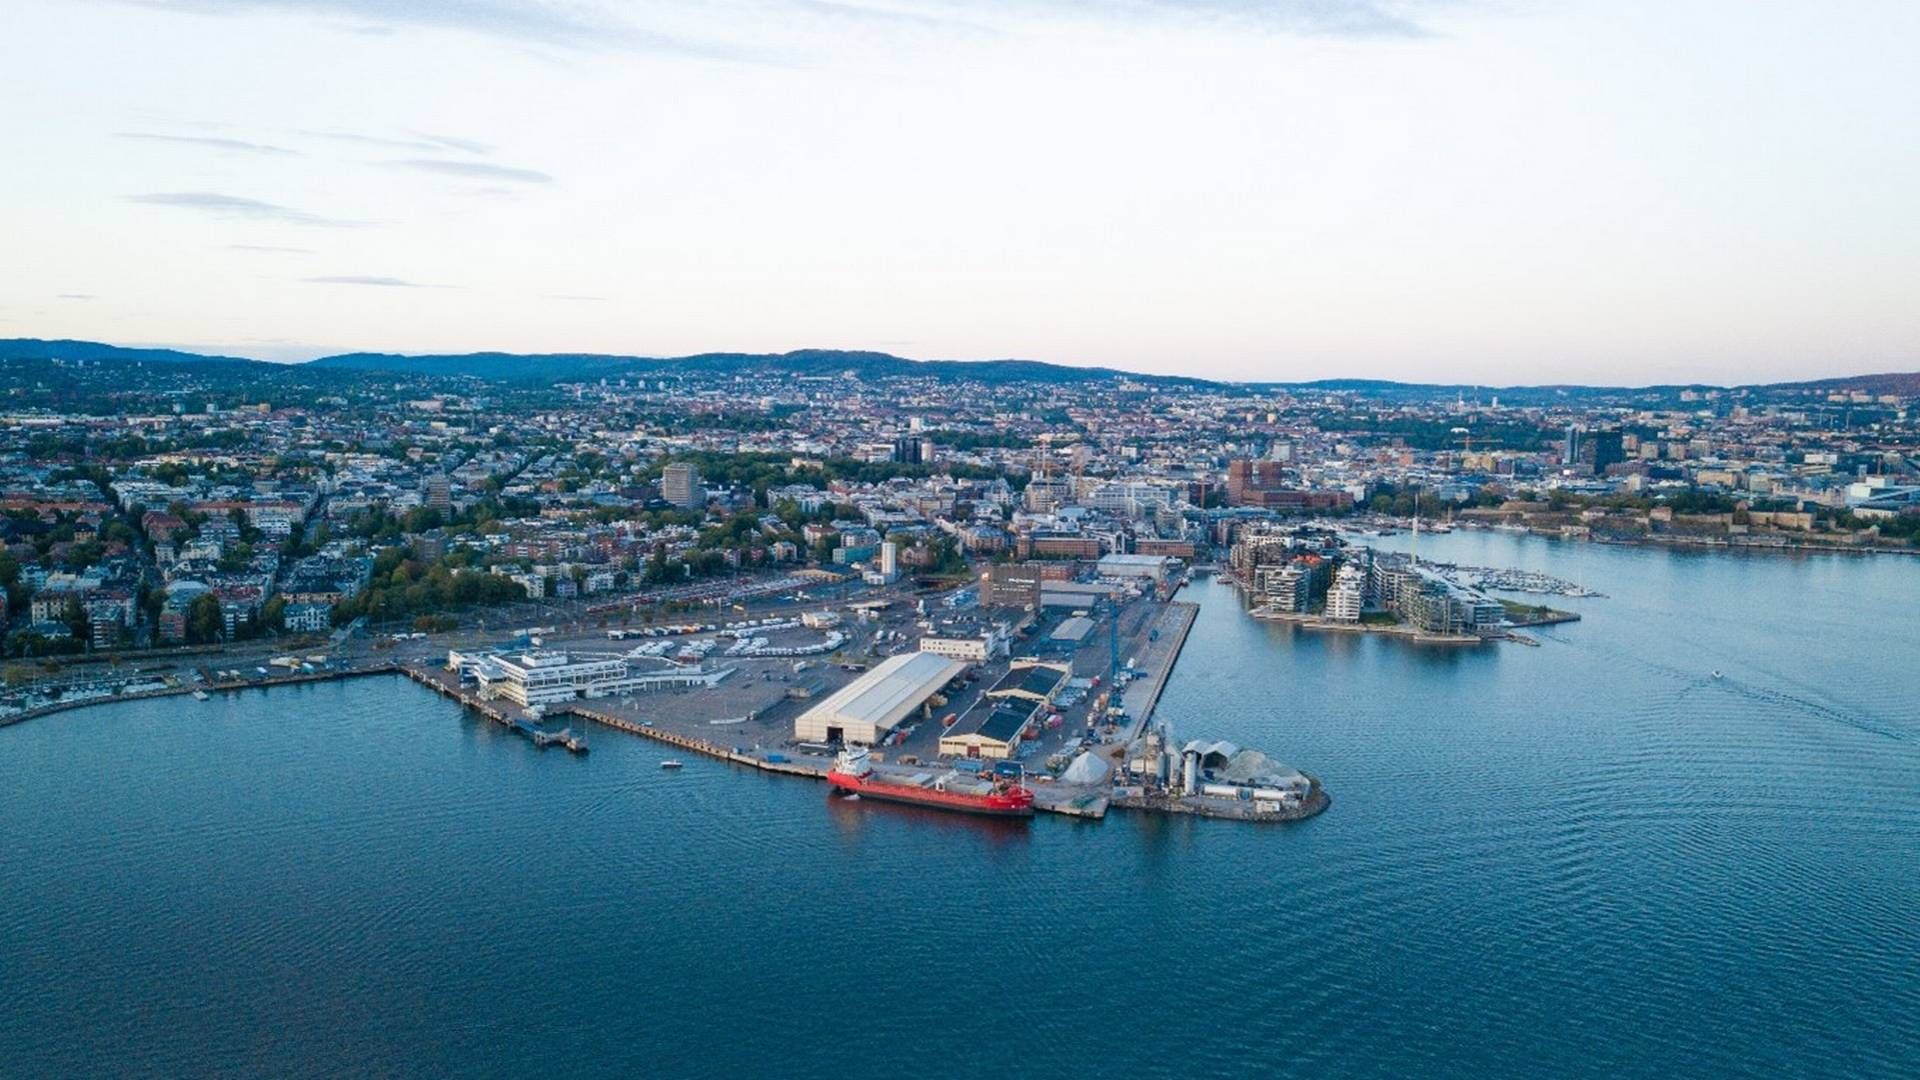 Det 320.000 kvm store havneområde Filipstad i Oslo skal med nordisk samarbejde forvandles til en ny og grøn bydel med bla. parker, byrum og strandpark: ”I Filipstad ønsker vi at sætte naturen først ved at skabe en omfattende blågrøn struktur," udtaler partner i landsskabsarkitektfirmaet SLA, som skal være med til at omdanne havnen.